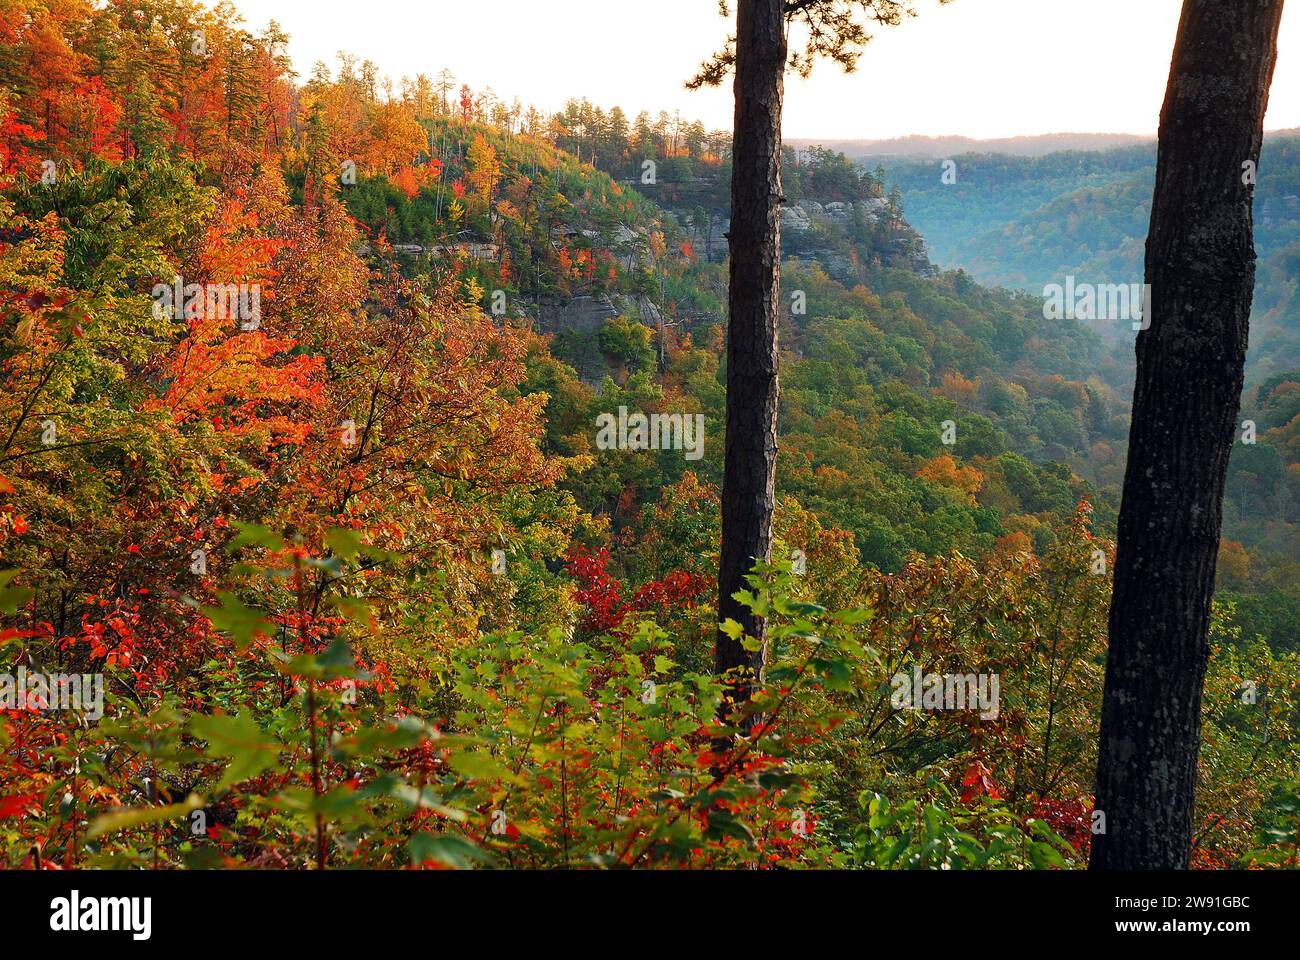 Des couleurs d'automne éclatantes éclatent le long du flanc d'une montagne dans une gorge un jour d'automne Banque D'Images